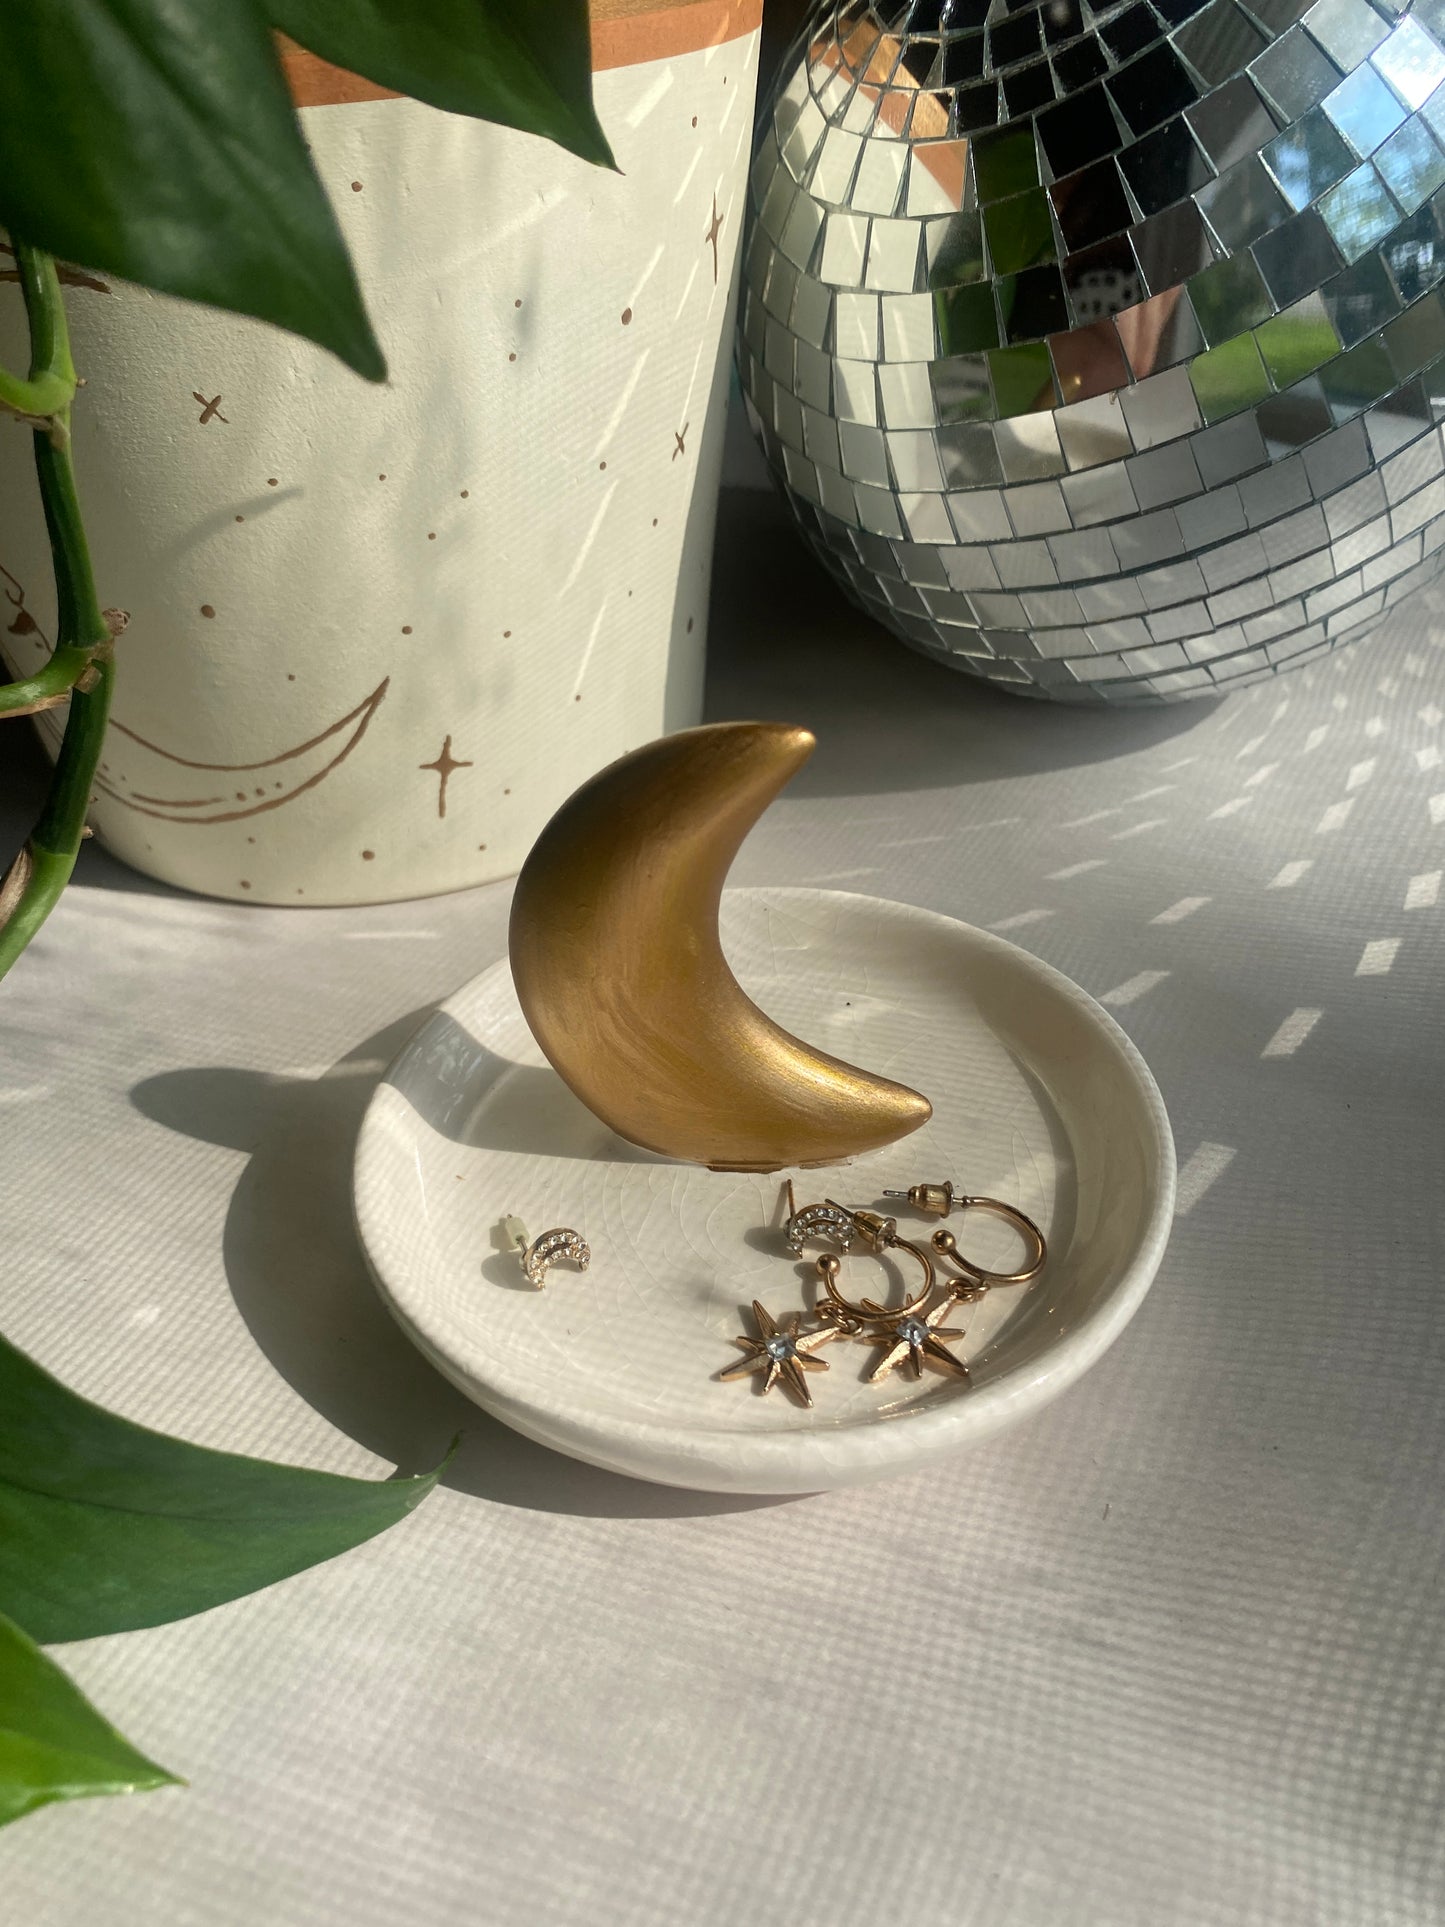 Crescent Moon Jewelry Tray | decorative trinket tray